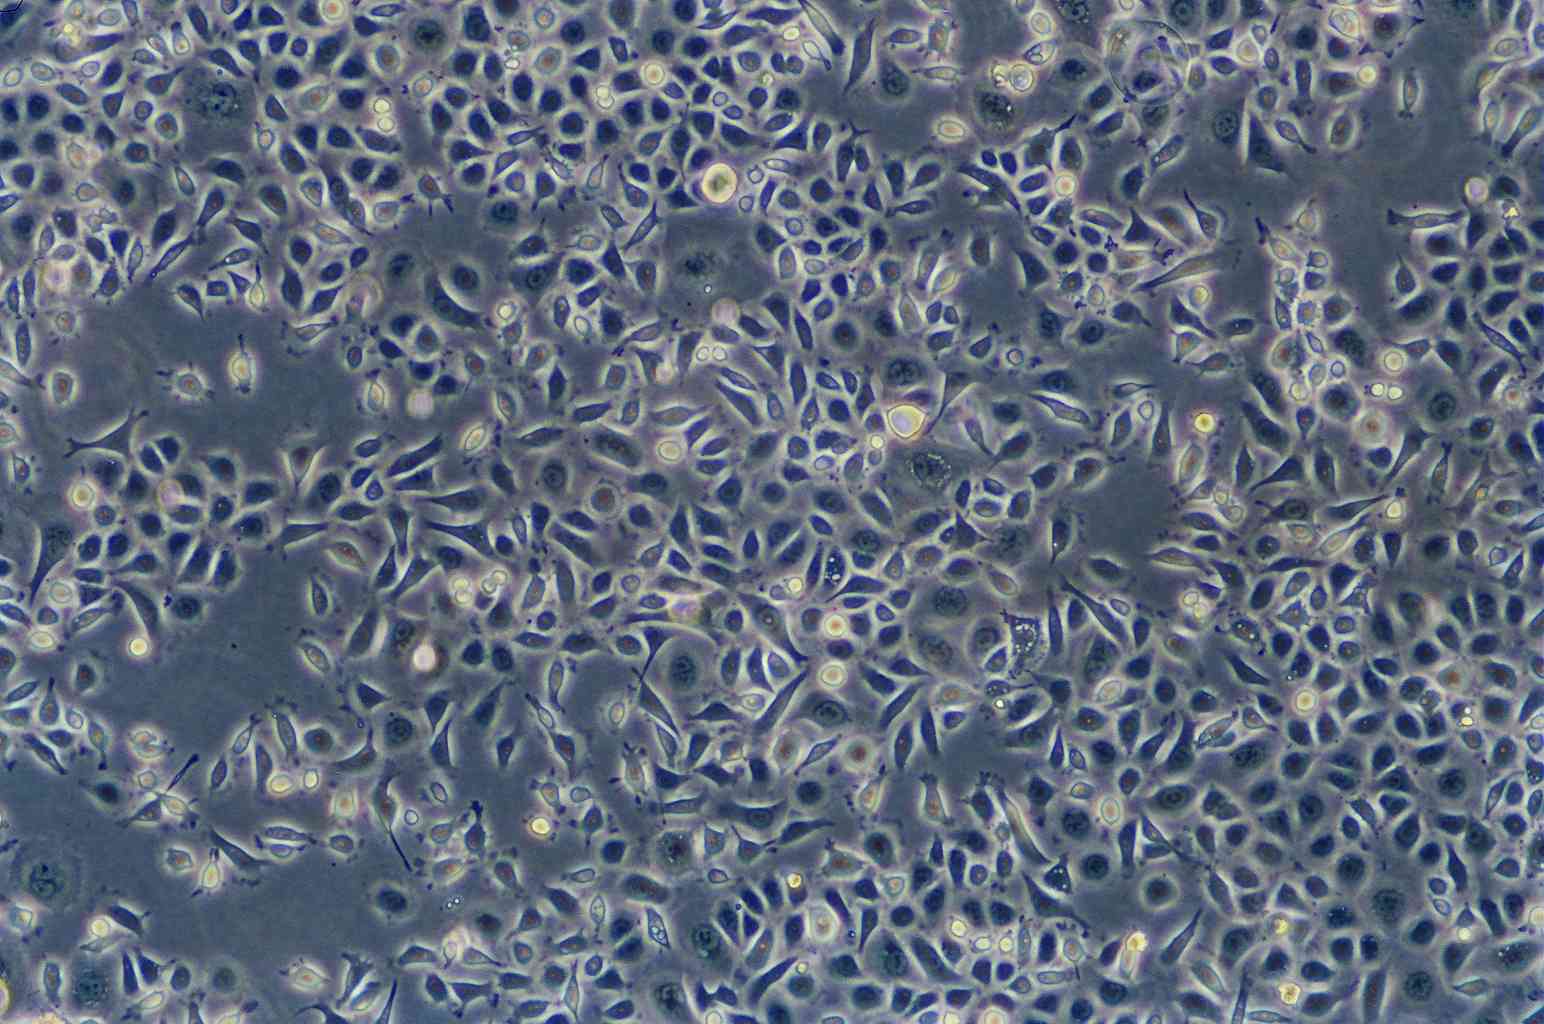 MuM-2B Cells|人眼脉络黑色素瘤可传代细胞系,MuM-2B Cells